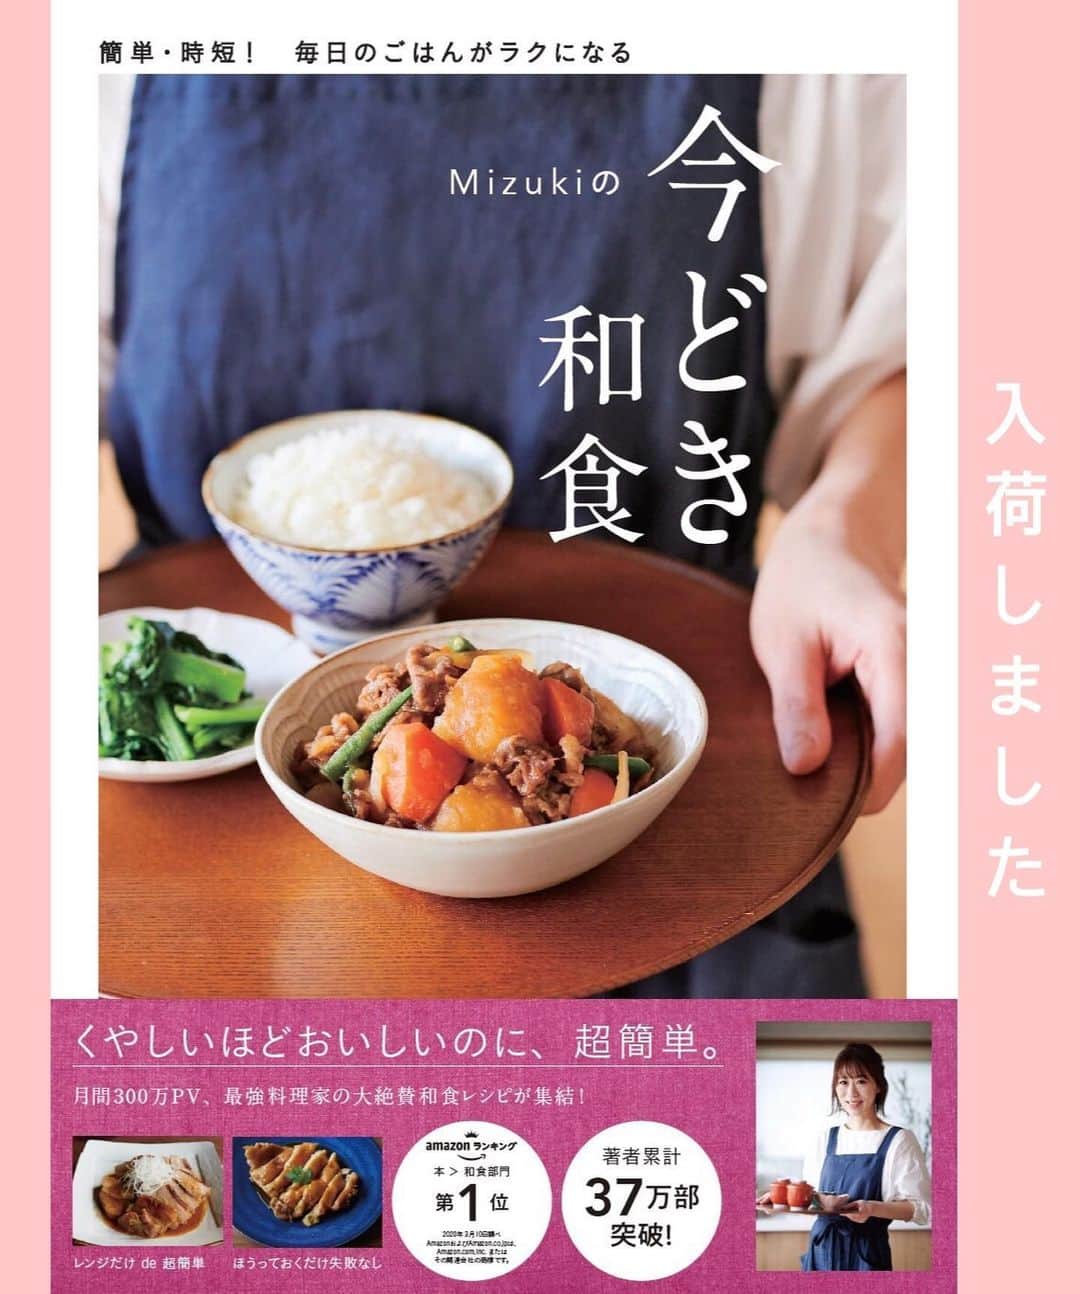 Mizuki【料理ブロガー・簡単レシピ】さんのインスタグラム写真 - (Mizuki【料理ブロガー・簡単レシピ】Instagram)「・﻿ 【レシピ】ーーーーーーーーーーーーーー﻿ ♡包まないから超簡単！小松菜棒餃子♡﻿ ーーーーーーーーーーーーーーーーーーー﻿ ﻿ ﻿ ﻿ おはようございます(*^^*)﻿ ﻿ 今日ご紹介させていただくのは﻿ ひき肉と小松菜だけの2素材餃子♡﻿ 餃子を作るなかでちょっと面倒な﻿ ［包む］工程をなくした棒餃子です♩﻿ 皮に具をのせて巻くだけなので﻿ 簡単に短時間で作れますよ(*´艸`)﻿ ﻿ もちろんコスパも抜群なので﻿ よかったらお試し下さいね〜♡﻿ ﻿ ﻿ ﻿ ーーーーーーーーーーーーーーーーーーーー﻿ 【2人分】﻿ 豚ひき肉...150g﻿ 小松菜...1/2束(100g)﻿ ●醤油・ごま油...各小1﻿ ●鶏がらスープ...小1/4﻿ ●にんにくチューブ...2cm﻿ 餃子の皮...17枚前後﻿ ごま油...大1﻿ (好みで)ぽん酢・ラー油...各適量﻿ ﻿ 1.小松菜はみじん切りにする。ボウルにひき肉、小松菜、●を入れてよく混ぜる。﻿ 2.餃子の皮の中央に1を細長く乗せ、皮の両端が1cm程重なるように巻く。﻿ 3.フライパンにごま油を伸ばし、2を(とじ目を上にして)並べてから中火にかける。焼き色がついたら水50mlを加え、フタをして弱めの中火で3分蒸し焼きにする。﻿ 4.残った水分を飛ばして器に盛り、ぽん酢とラー油を添える。﻿ ーーーーーーーーーーーーーーーーーーーー﻿ ﻿ ﻿ ﻿ 《ポイント》﻿ ♦︎餃子のあんは大1弱ずつ包んでいます♩﻿ ♦︎しっかり焼き色が付いてから水を加え、しっかり水分を飛ばすと綺麗に仕上がります♩﻿ ﻿ ﻿ ﻿ ﻿ ﻿ ﻿ ﻿ ﻿ 🔻入荷しました🔻﻿ ストーリーにリンク貼っています🙇‍♀️﻿ ＿＿＿＿＿＿＿＿＿＿＿＿＿＿＿＿＿＿＿﻿ 📕\ \ 新刊発売中 / /📕﻿ 簡単・時短！ 毎日のごはんがラクになる﻿ ✨🦋 【 #Mizukiの今どき和食 】🦋✨﻿ ＿＿＿＿＿＿＿＿＿＿＿＿＿＿＿＿＿＿＿﻿ ﻿ なるべく少ない材料で﻿ 手間も時間も省きながら﻿ 簡単にできるおいしい和食レシピ♩﻿ 簡単に失敗なくマスターできる一冊で﻿ もっと気軽に、カジュアルに﻿ 和食を楽しんで下さいね(*^^*)﻿ ﻿ ﻿ ーーー ⭐️PART.1 メインおかず ⭐️ーーー﻿ 素材別にレシピをご紹介しています♩﻿ 和食の定番から新定番まで﻿ どれも押さえておきたいメニューばかり。﻿ 肉じゃがはフライパンで！焼き豚はレンジで！﻿ ぶり大根は切り身を使って手軽に作ります♩﻿ ﻿ ーーー ☘️PART.2 サブおかず ☘️ーーー﻿ 年中手に入るお手頃野菜と﻿ 乾物や大豆、こんにゃくなどを使った﻿ 副菜レシピをたっぷり掲載！！﻿ 普段SNSではメインおかずばかりなので﻿ 本では副菜にも力を入れています(*^^*)﻿ ﻿ ーーー 🌸PART.3 ごはんと汁物 🌸ーーー﻿ ささっと作れる丼と麺、﻿ みんなで食べたいいなり寿司や﻿ 手巻きごはんもご紹介！﻿ 複数の炊き込みごはんと﻿ 味噌汁&和風スープも盛りだくさん！﻿ ﻿ ﻿ 各レシピのポイントは﻿ 【写真付きで丁寧に解説】﻿ 副菜レシピもたっぷりなので﻿ 【メインページに副菜メモもつけました】﻿ ＊このメインにはこの副菜が合いますよ〜﻿ という献立の提案です(*^^*)﻿ 【その他コラムも充実】﻿ 全127品中ほぼ全て﻿ 【本だけのレシピです！】﻿ ＿＿＿＿＿＿＿＿＿＿＿＿＿＿＿＿＿＿＿﻿ ﻿ ﻿ ﻿ ﻿ ﻿ ＿＿＿＿＿＿＿＿＿＿＿＿＿＿＿＿＿﻿ 🎀発売中🎀﻿ 【#ホットケーキミックスのお菓子 】﻿ ﻿ 一冊まるっとホケミスイーツ♩﻿ 普段のおやつから﻿ 特別な日にも使えるレシピを﻿ この一冊に詰め込みました(*^^*)﻿ ホットケーキミックスを使えば﻿ 簡単に本格的なお菓子が作れますよ♡﻿ ＿＿＿＿＿＿＿＿＿＿＿＿＿＿＿＿＿﻿ ﻿ ⭐️ストーリー、ハイライト、プロフ画面に﻿ 本のURLを貼らせていただいております♩﻿ →(@mizuki_31cafe )﻿ ﻿ ﻿ ﻿ ﻿ #棒餃子#小松菜#ひき肉#餃子#包まない#コスパ#うちで過ごそう#Mizuki#簡単レシピ#時短レシピ#節約レシピ#料理#レシピ#フーディーテーブル#マカロニメイト#おうちごはん#デリスタグラマー#料理好きな人と繋がりたい#おうちごはん#lover#foodpic#follow#cooking#recipe#lin_stagrammer#stayhome#小松菜棒餃子m」6月1日 7時19分 - mizuki_31cafe